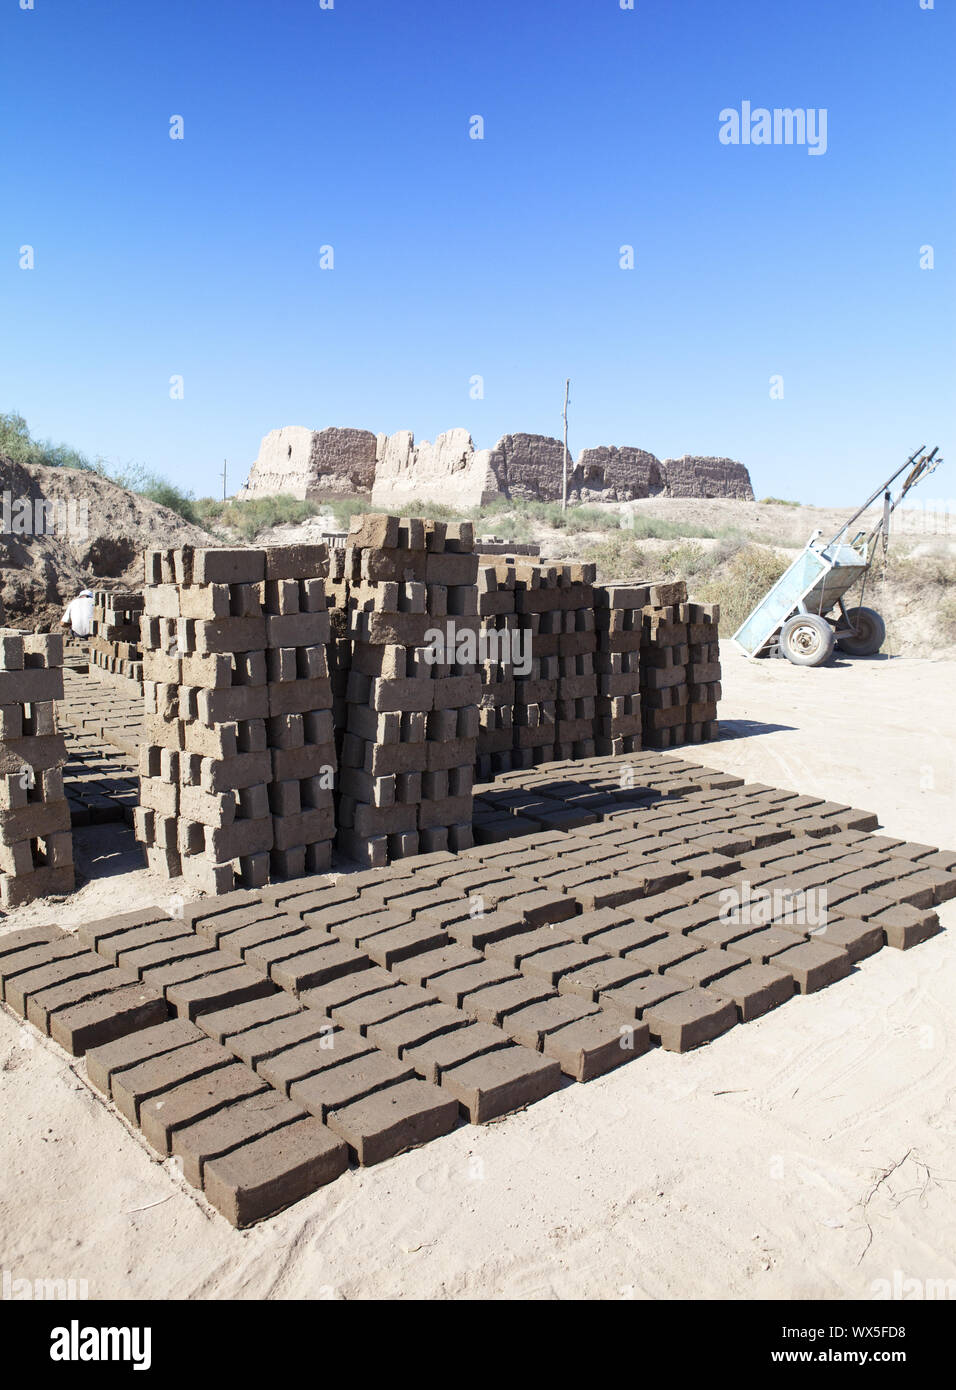 Reparatur der alten Festung Kyzyl - Kala in der kyzylkum Wüste, Usbekistan Stockfoto